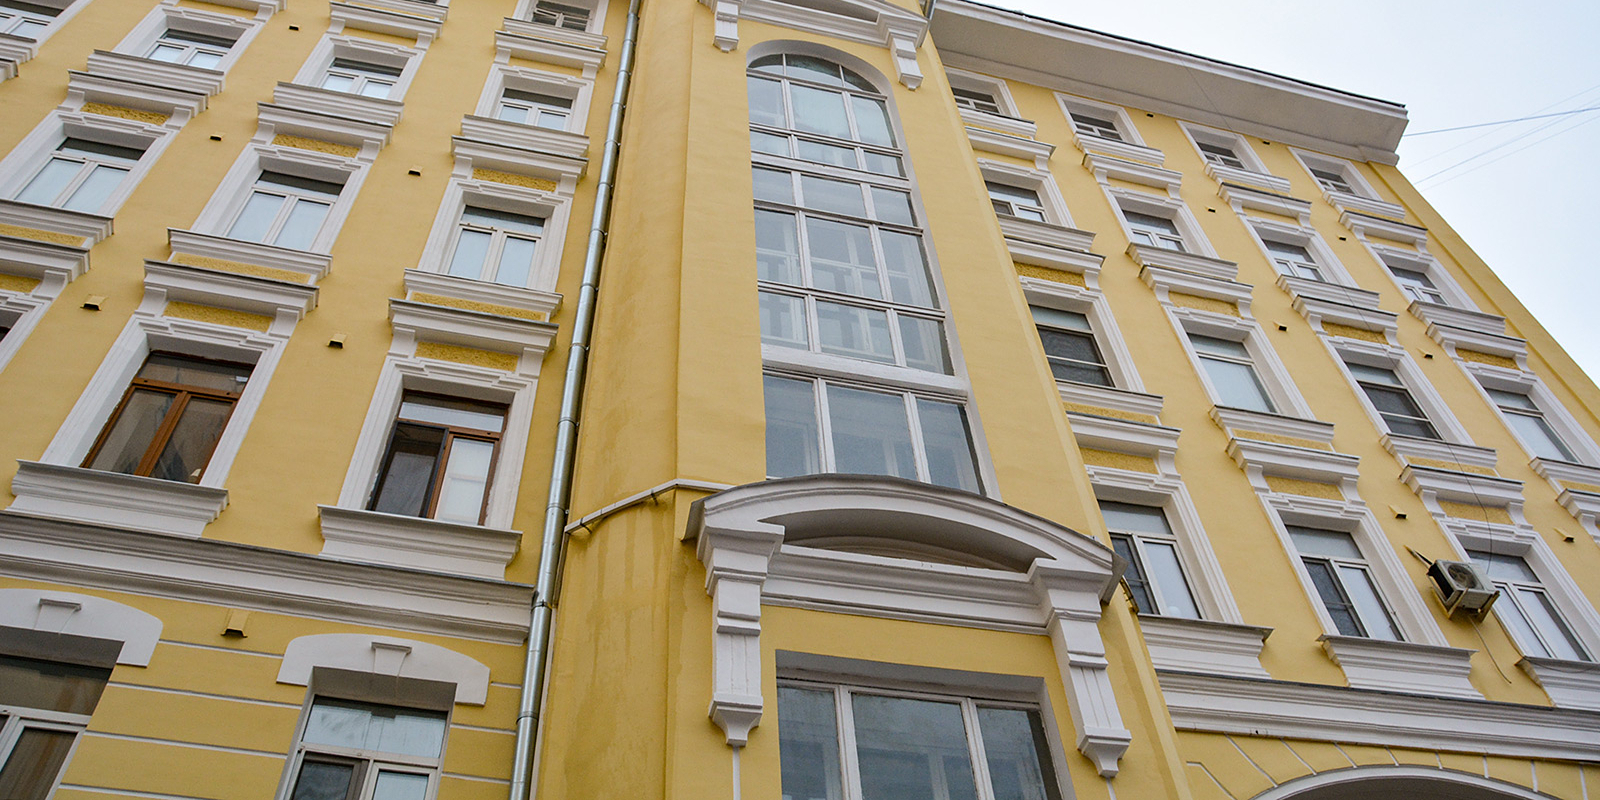 Объект возвели в 1893 году по адресу: улица Маросейка, дом 13, строение 2. Фото: сайт мэра Москвы